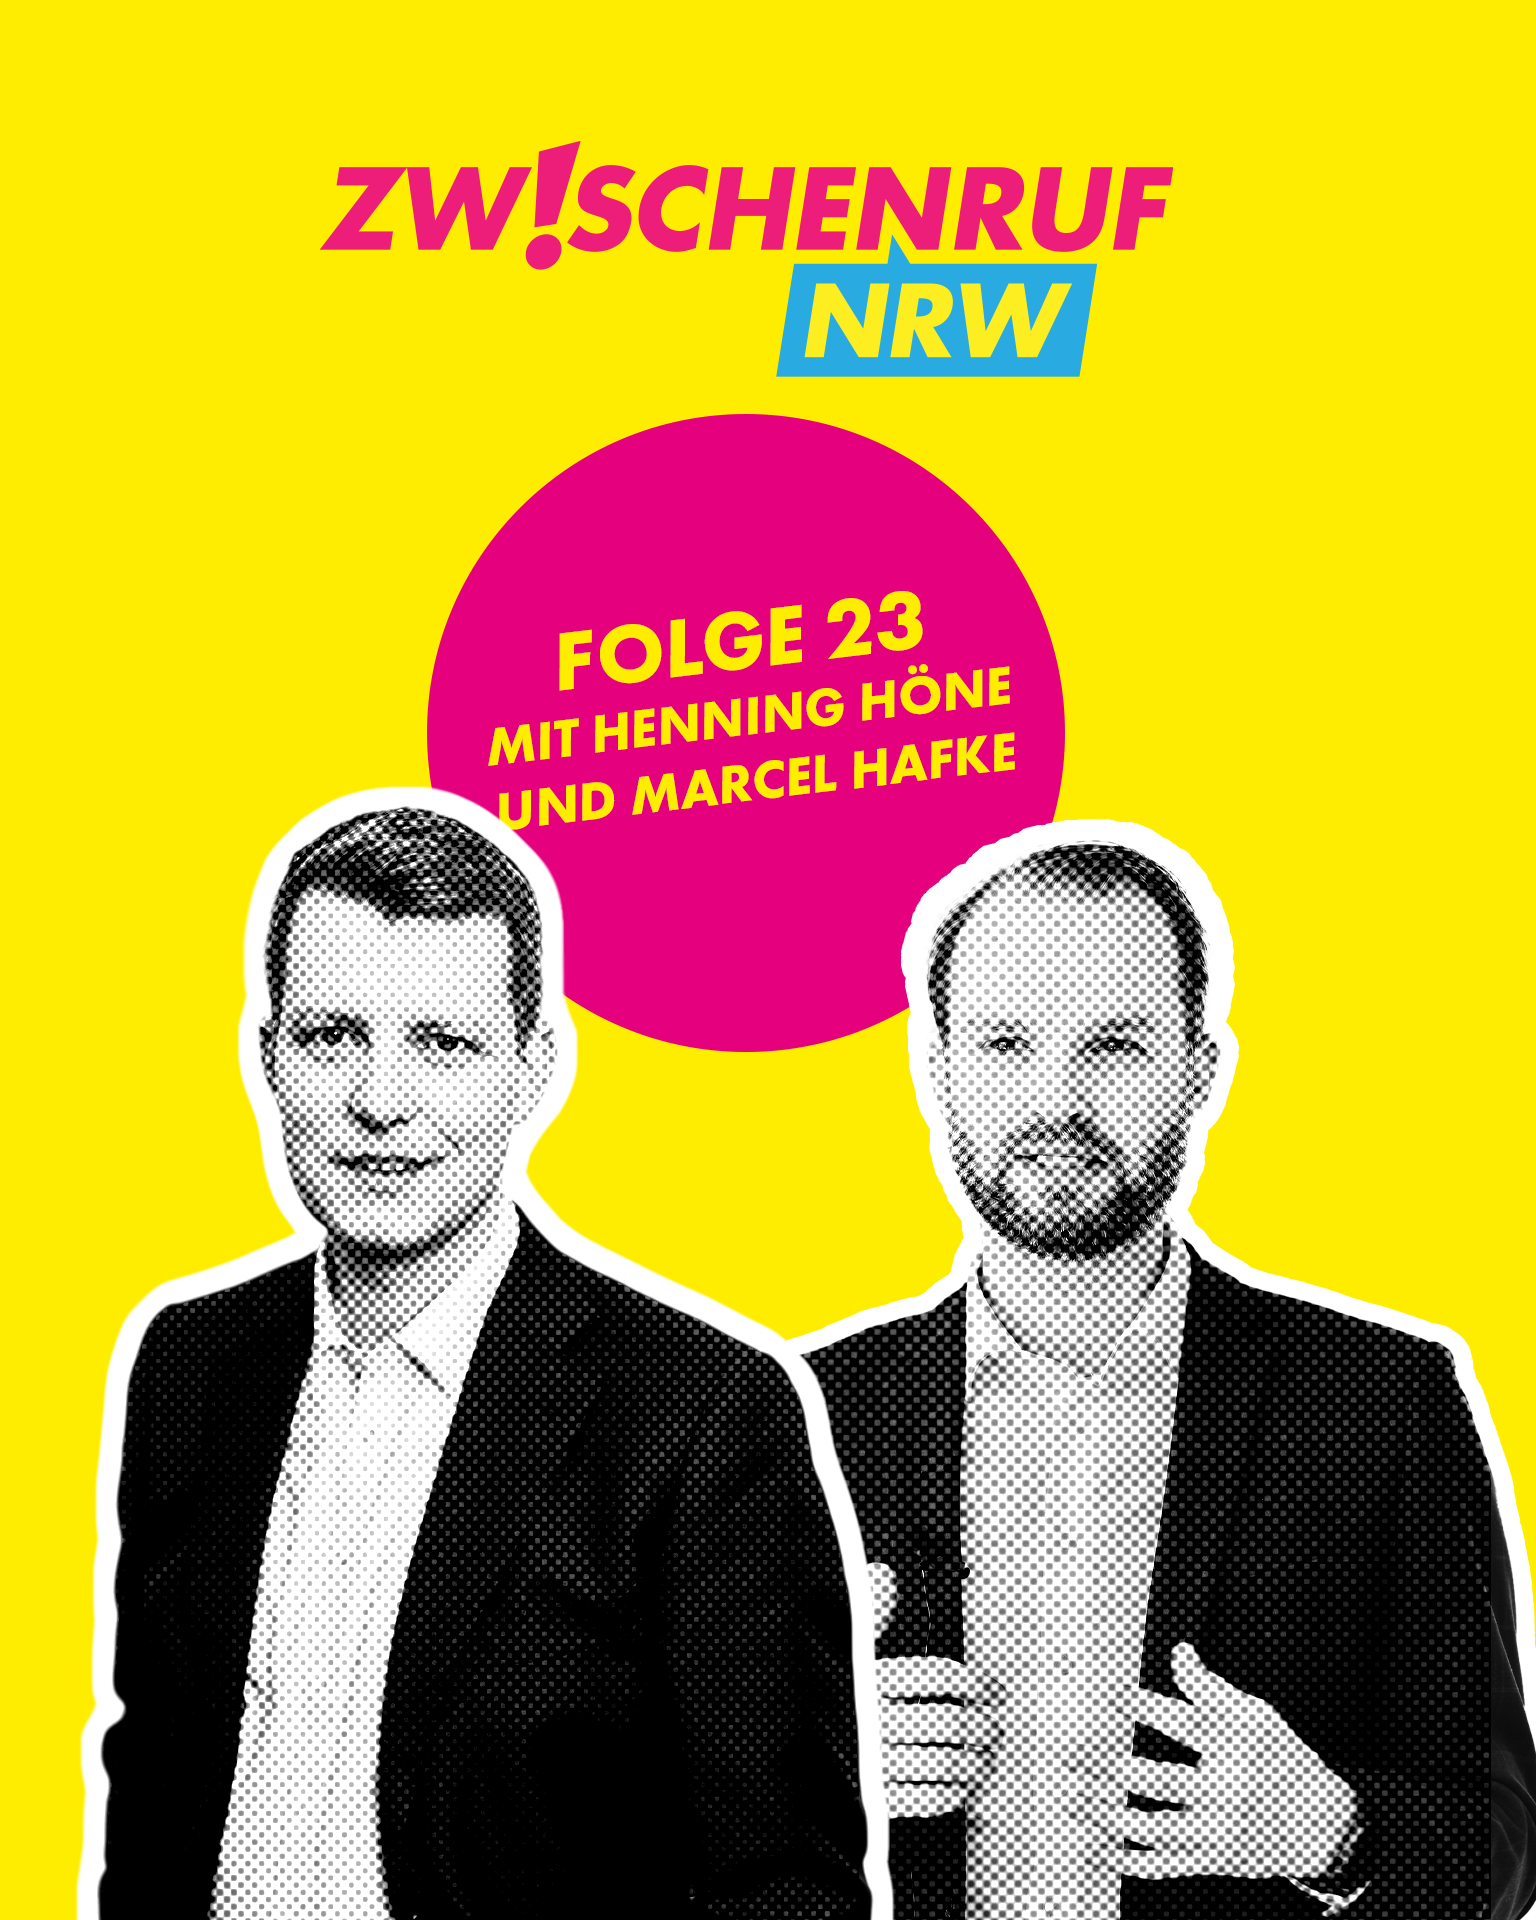 Mehr über den Artikel erfahren Folge 23 – OGS-Rechtsanspruch 2026, Wirtschaftspolitik in NRW und das 12-Punkte-Papier der FDP mit Henning Höne